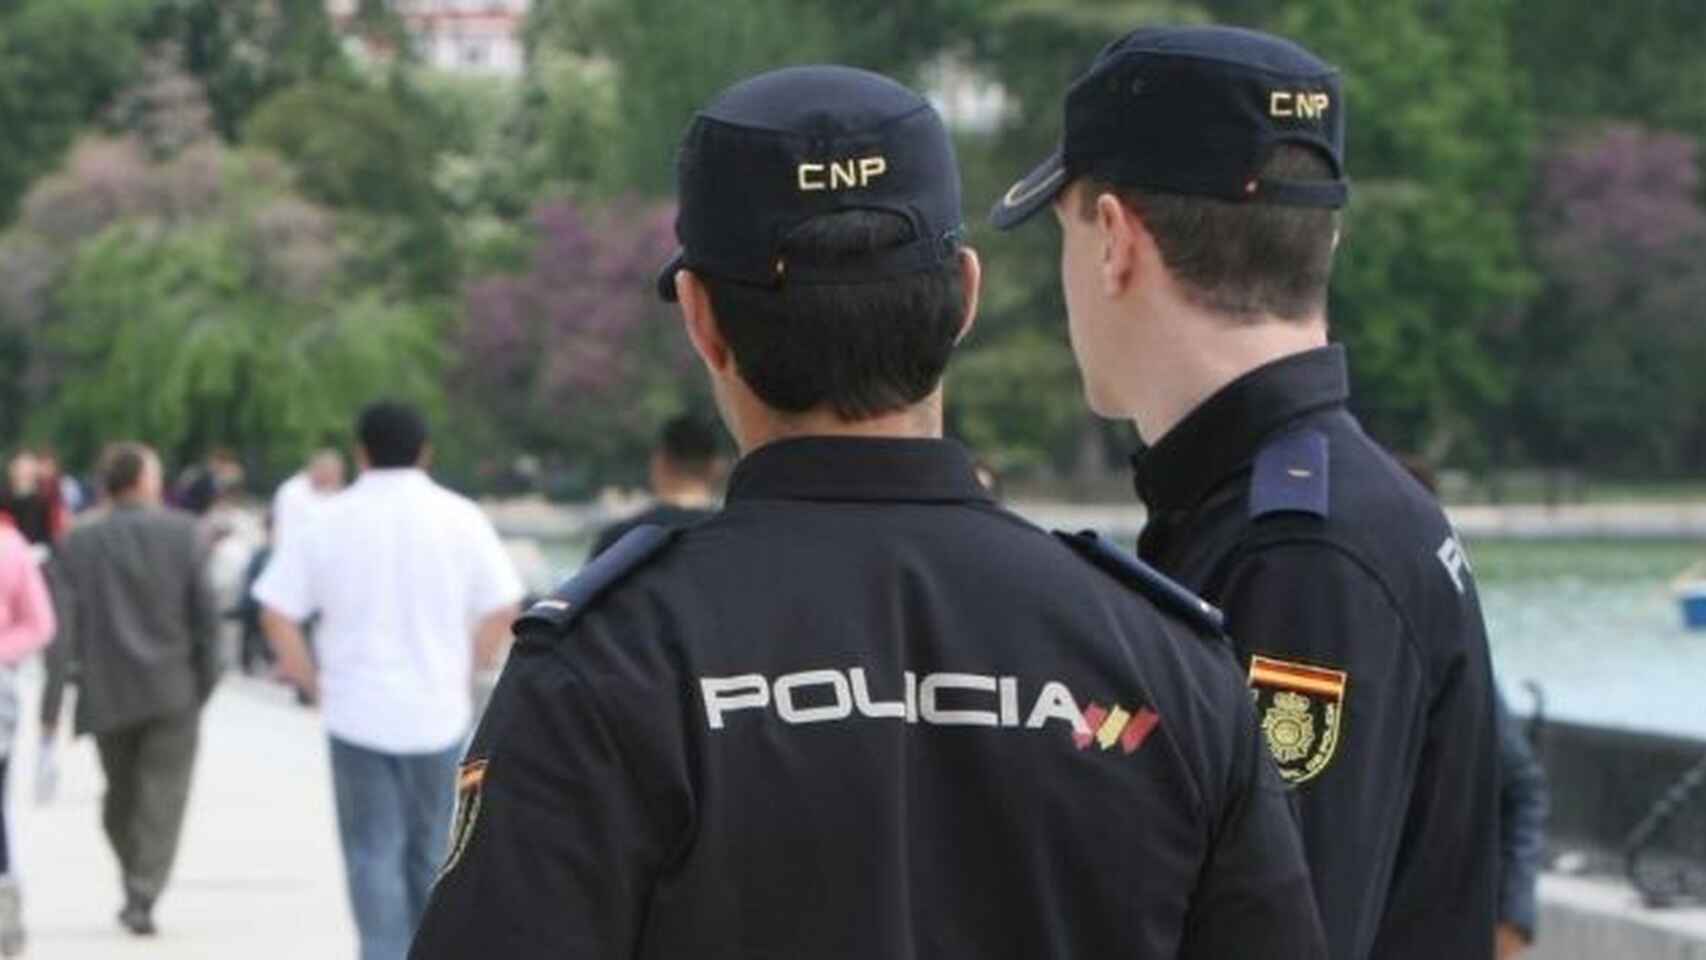 La Policía detuvo a uno de los implicados en Tarragona y a otro en Elche.